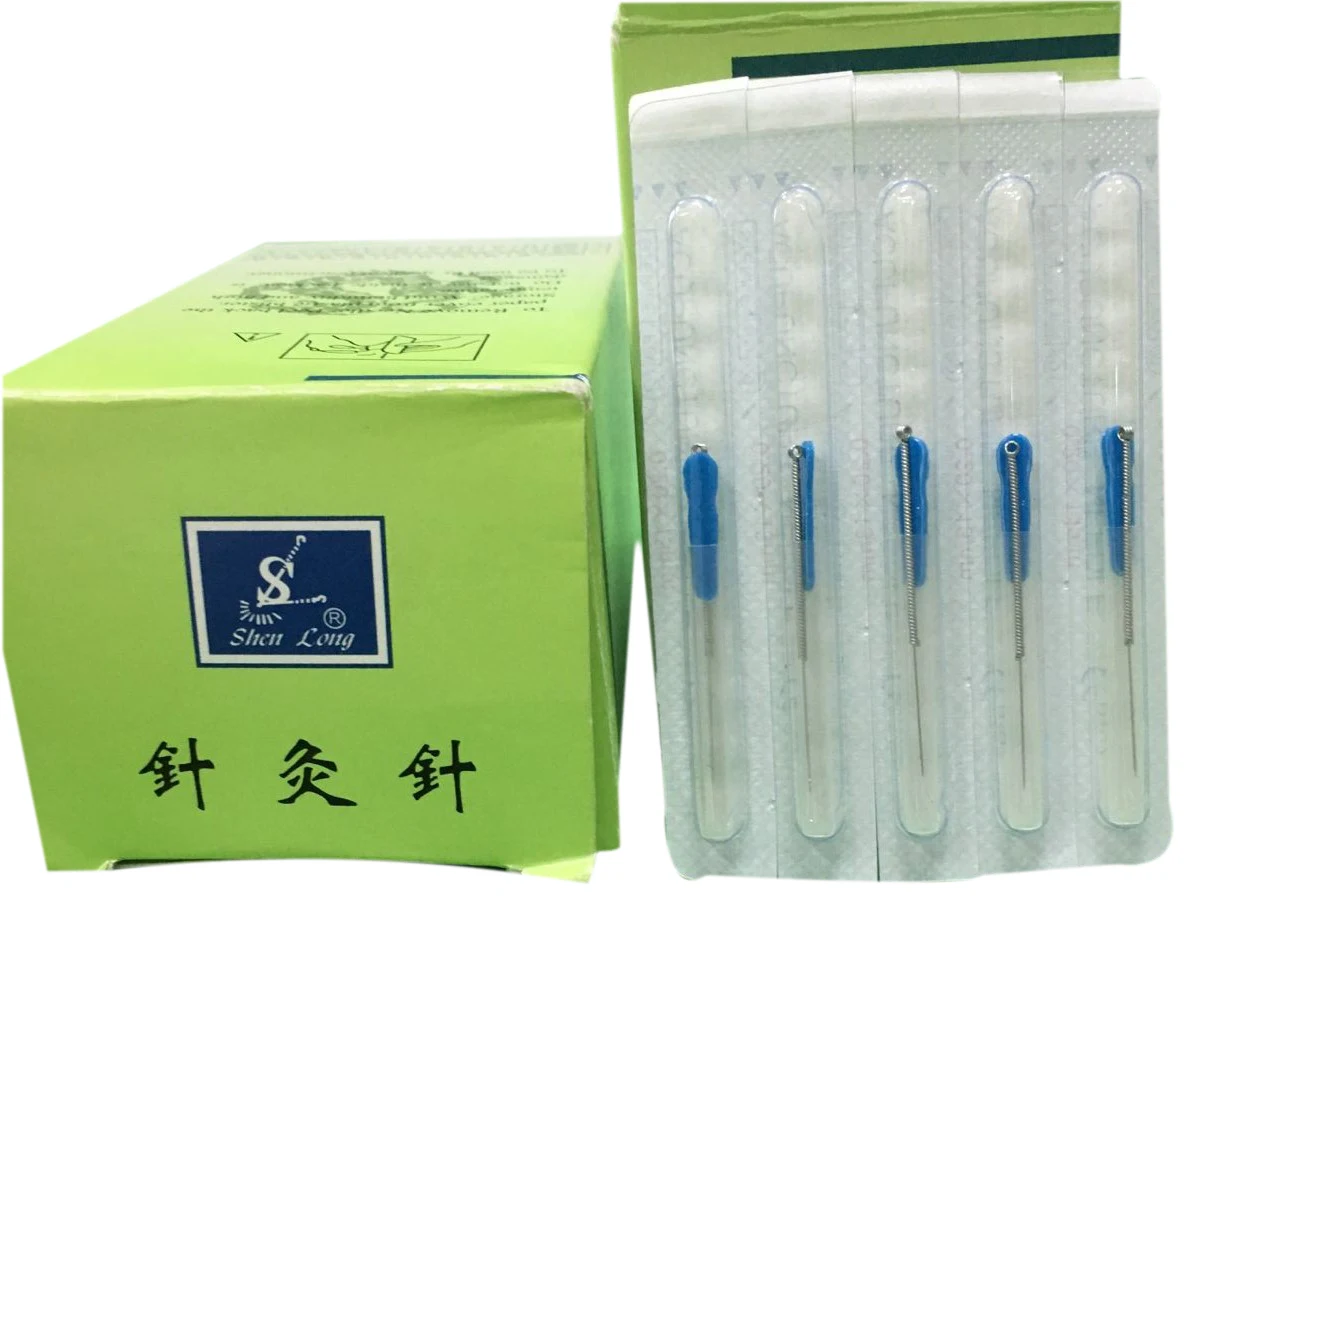  Shenlong брендовые иглы для иглоукалывания с ручкой из нержавеющей стали без трубки по низкой